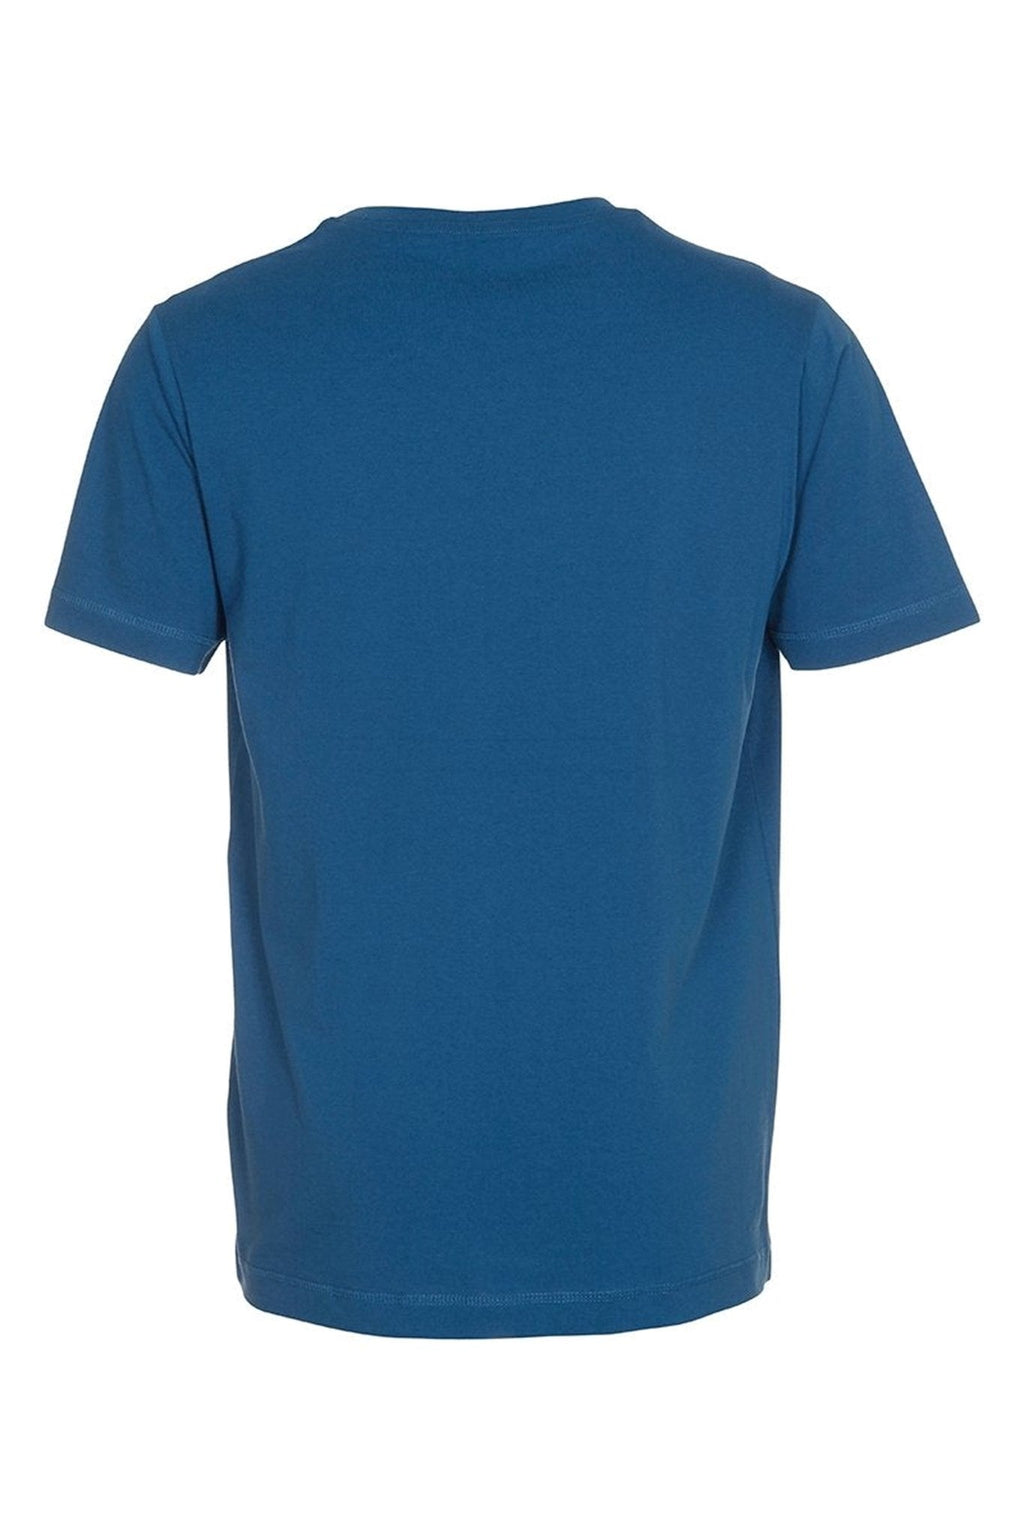 Camiseta básica de Vneck - Azul de petróleo